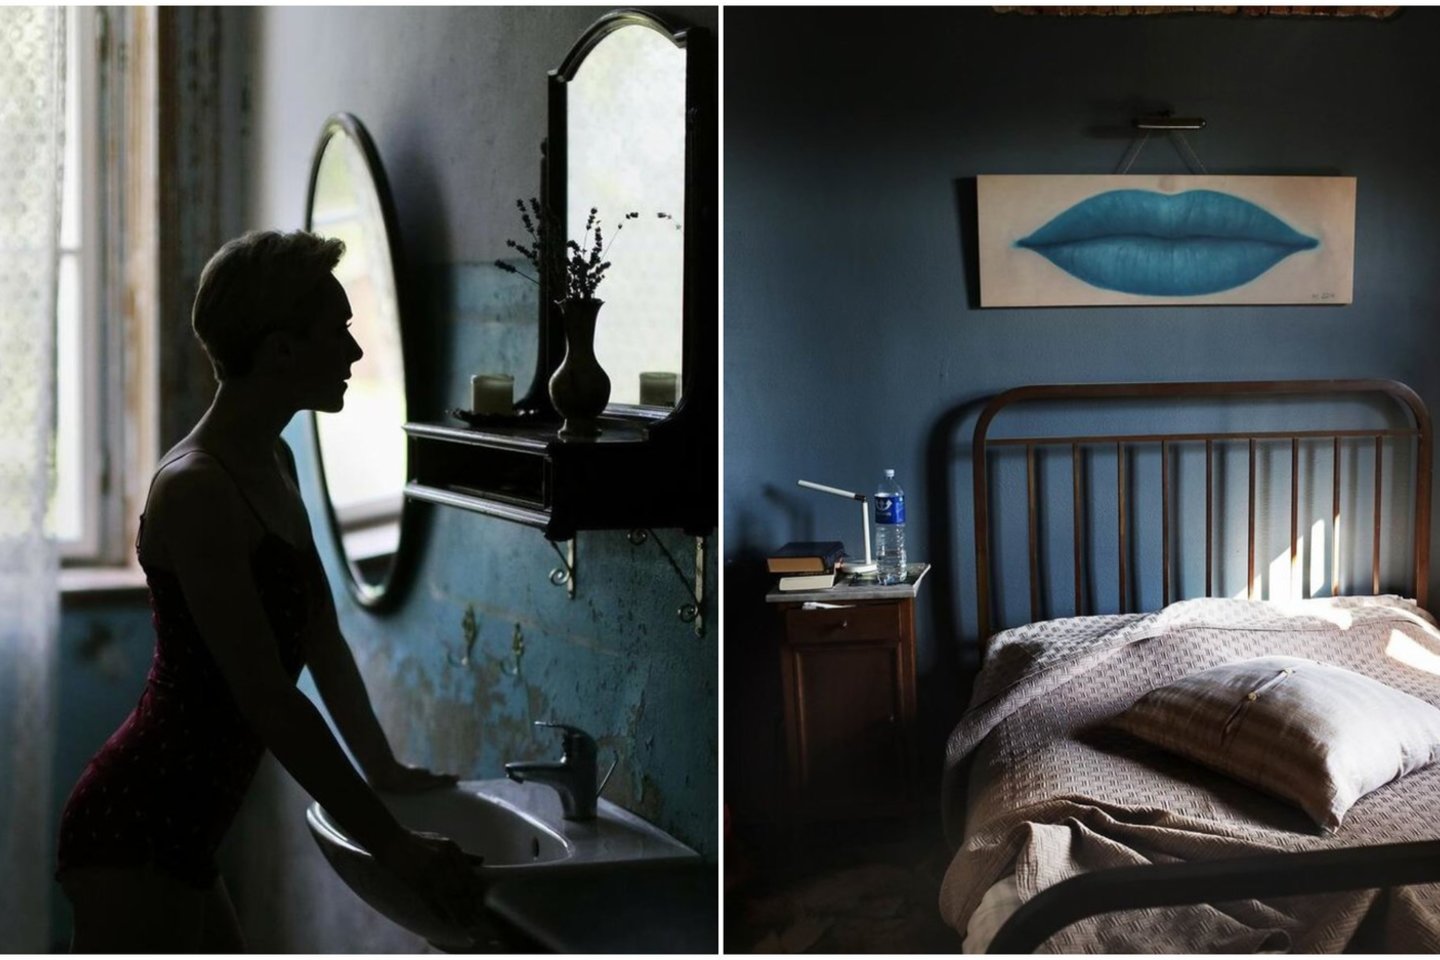  Fotomenininkė Viktorija Vaišvilaitė atveria duris į savo fotografijos archyvus ir į kambarius, pasakojančius ypatingas istorijas.